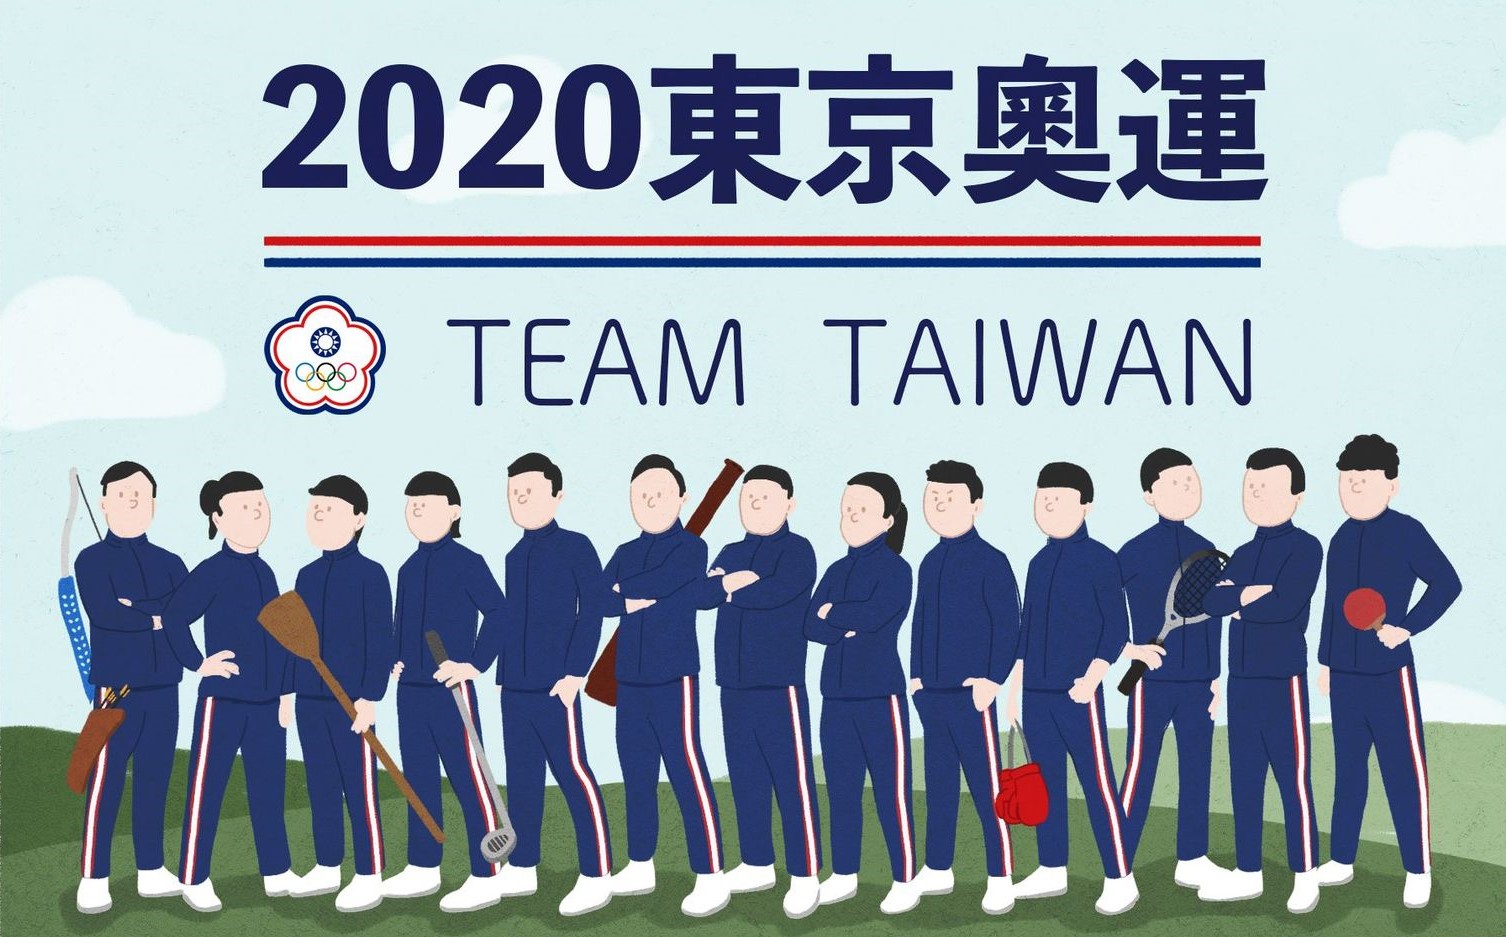 ตารางการแข่งขันโอลิมปิกตะวันออกของทีมไต้หวันสิ้นสุดลงแล้ว นับเป็นสถิติแห่งความสำเร็จ  ภาพจาก／Home Run Taiwan